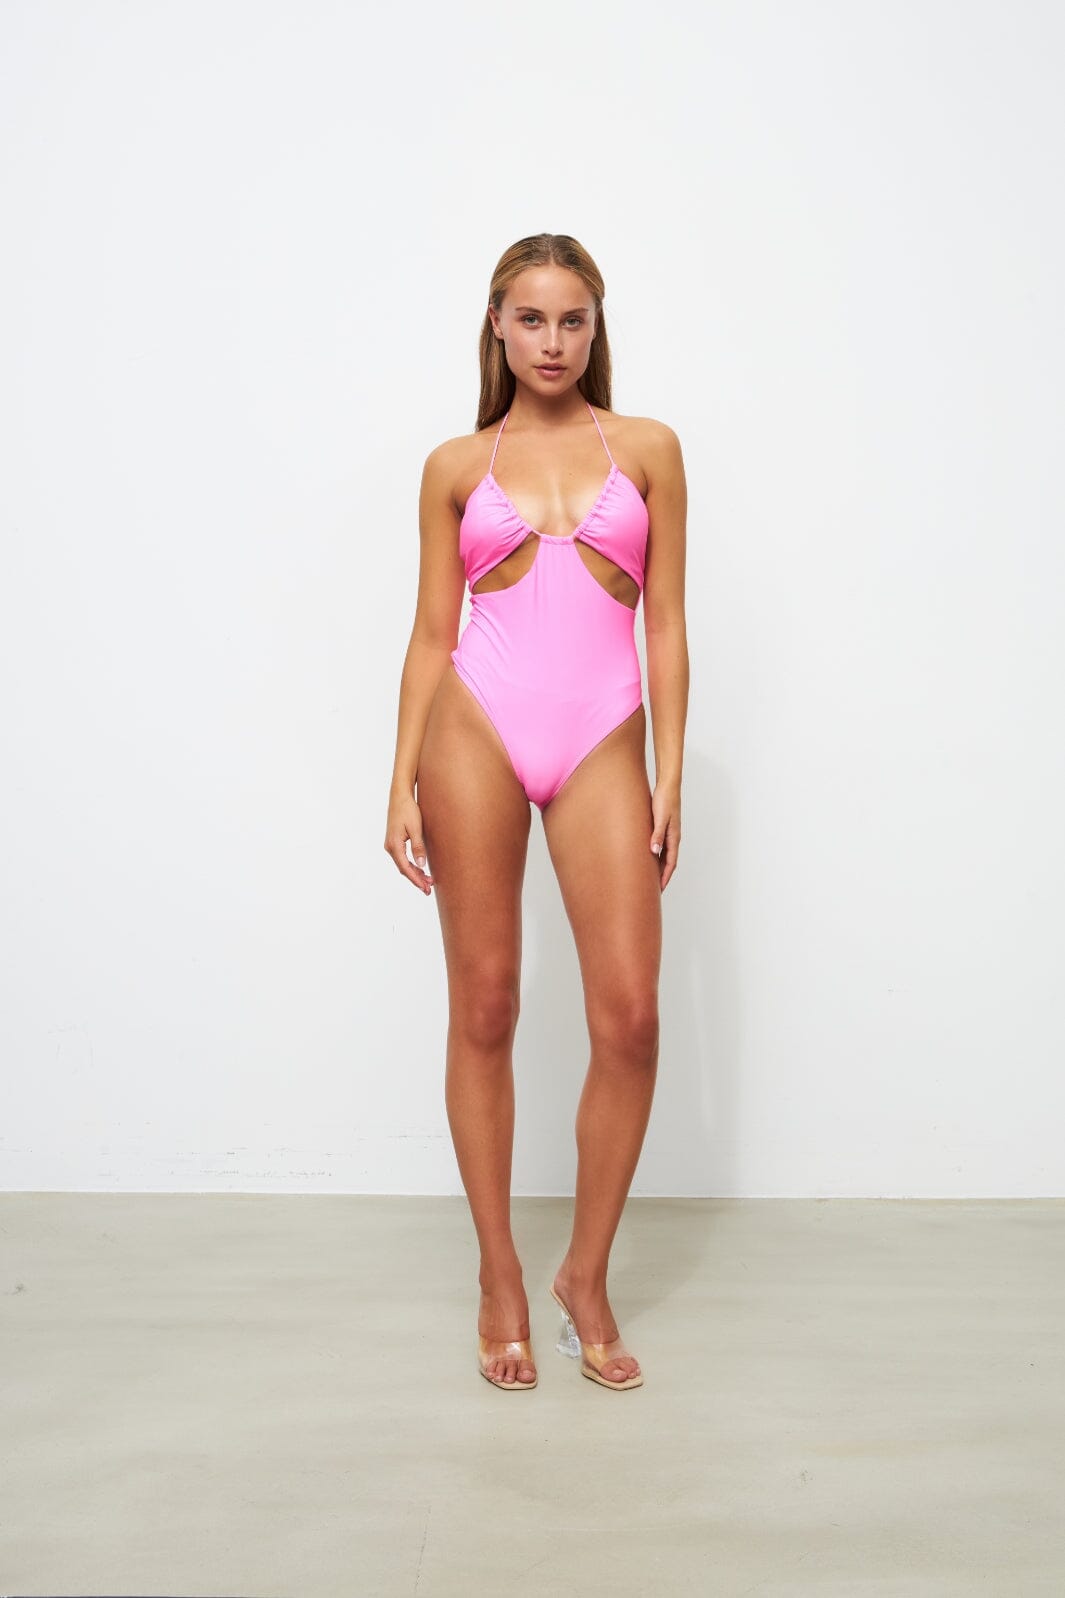 Cras - Inescras Swimsuit - Pink 906C Badedragter 